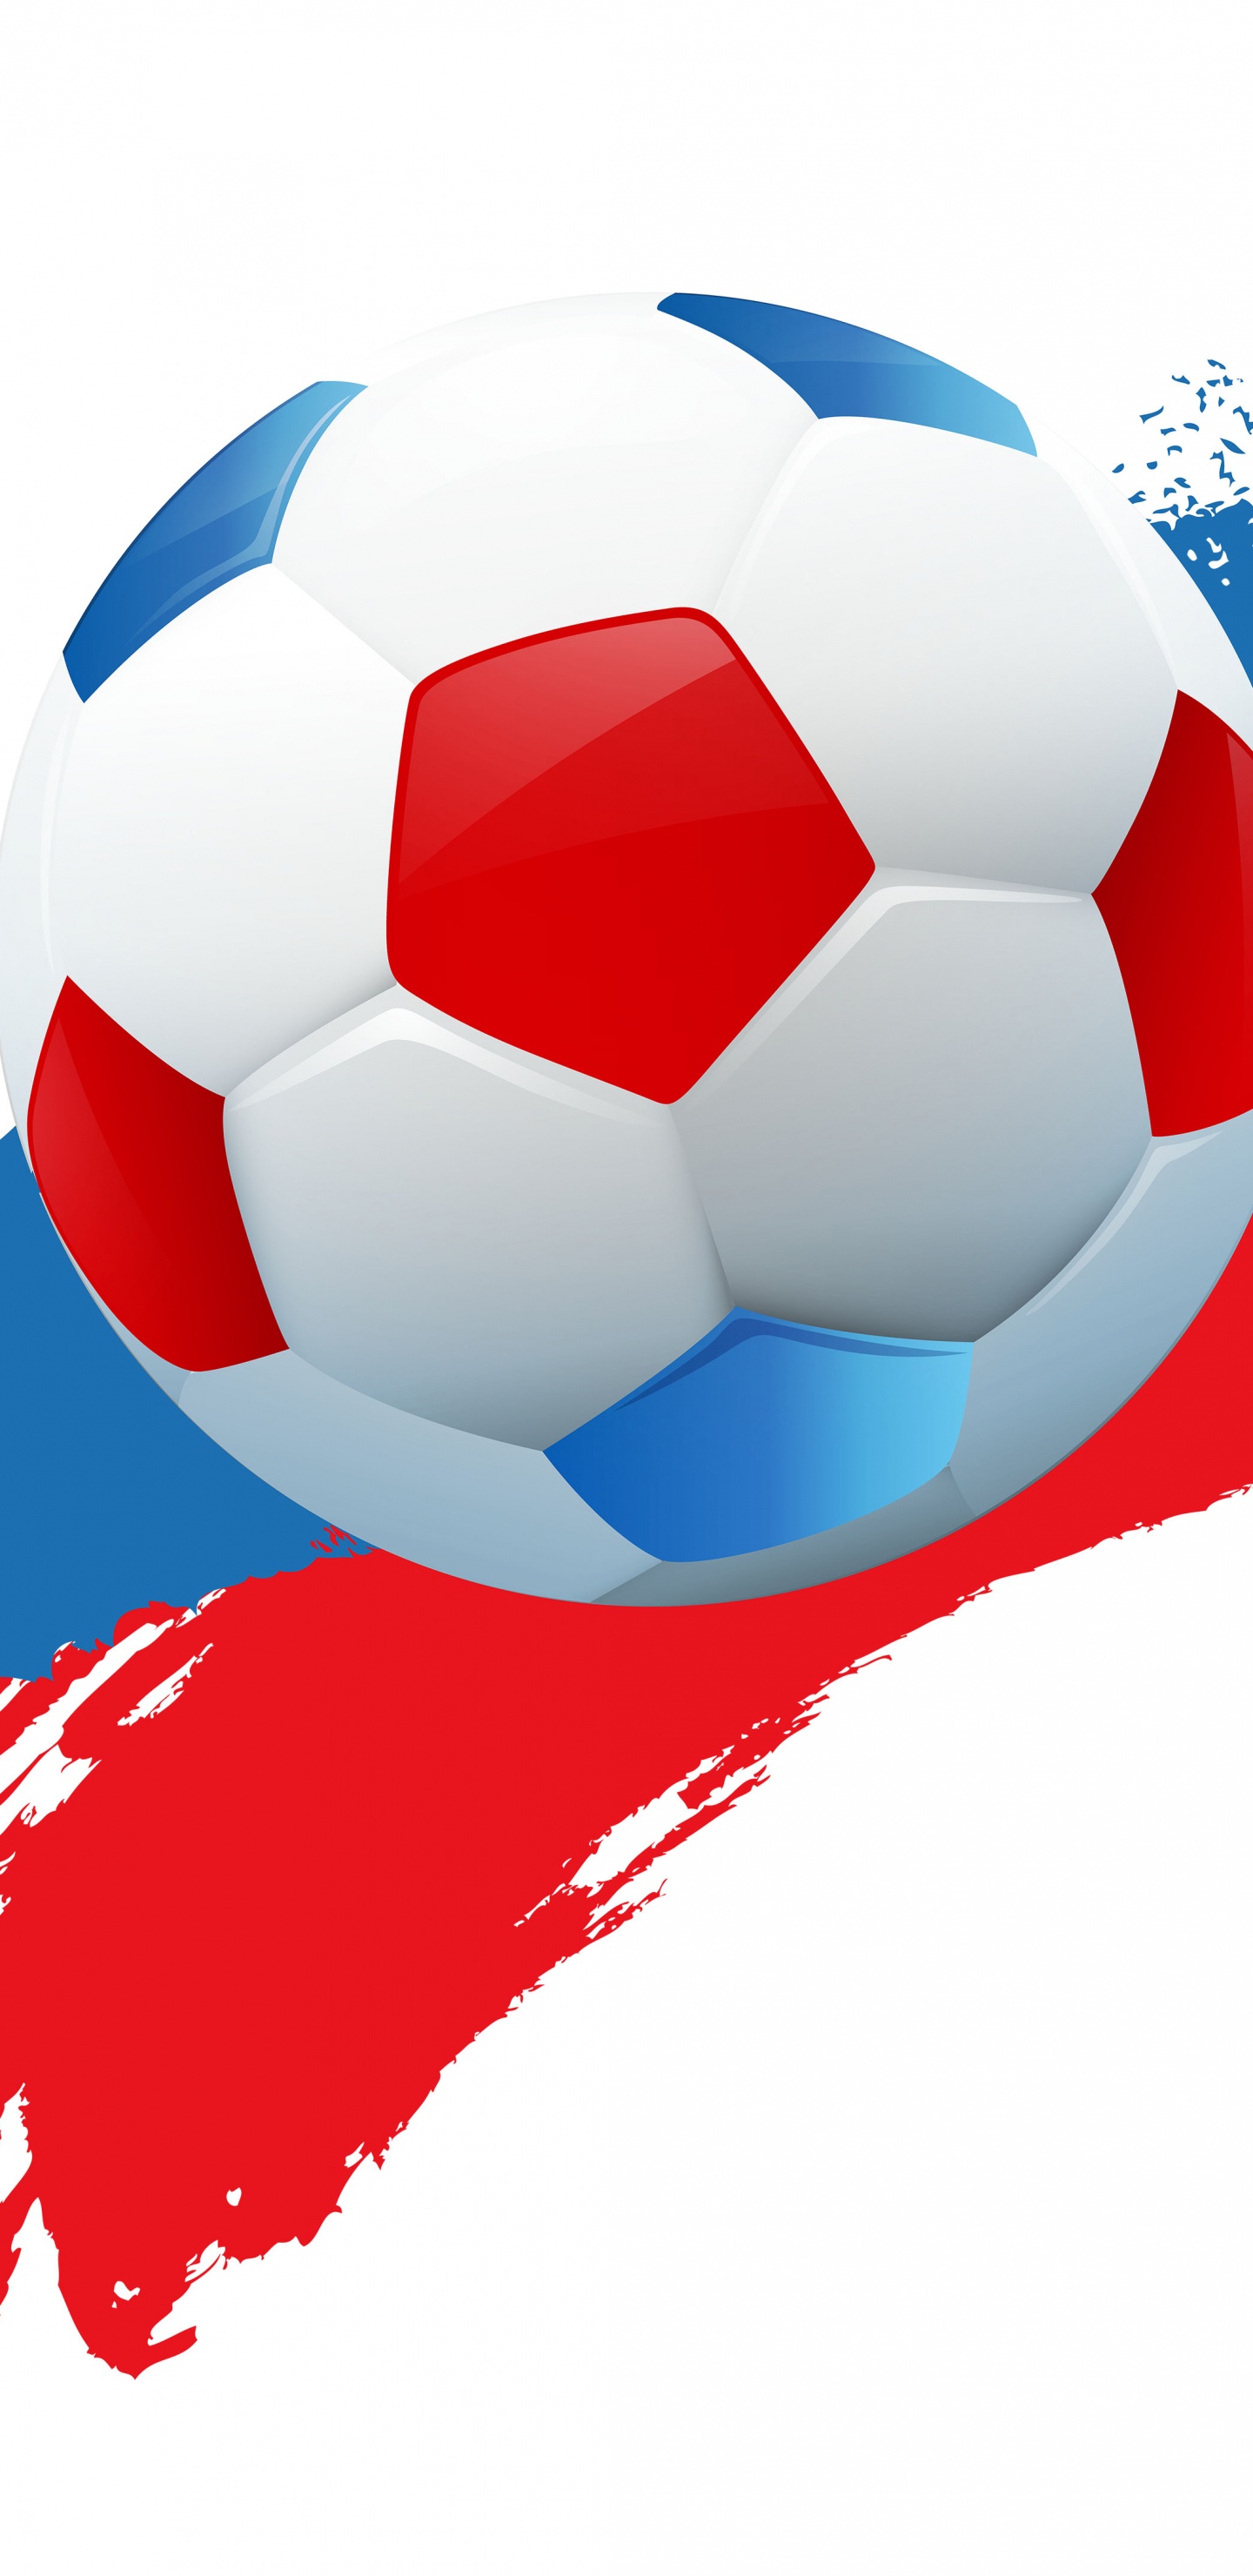 2018年世界杯, 球, 国际足联, 足球, 体育设备 壁纸 1440x2960 允许